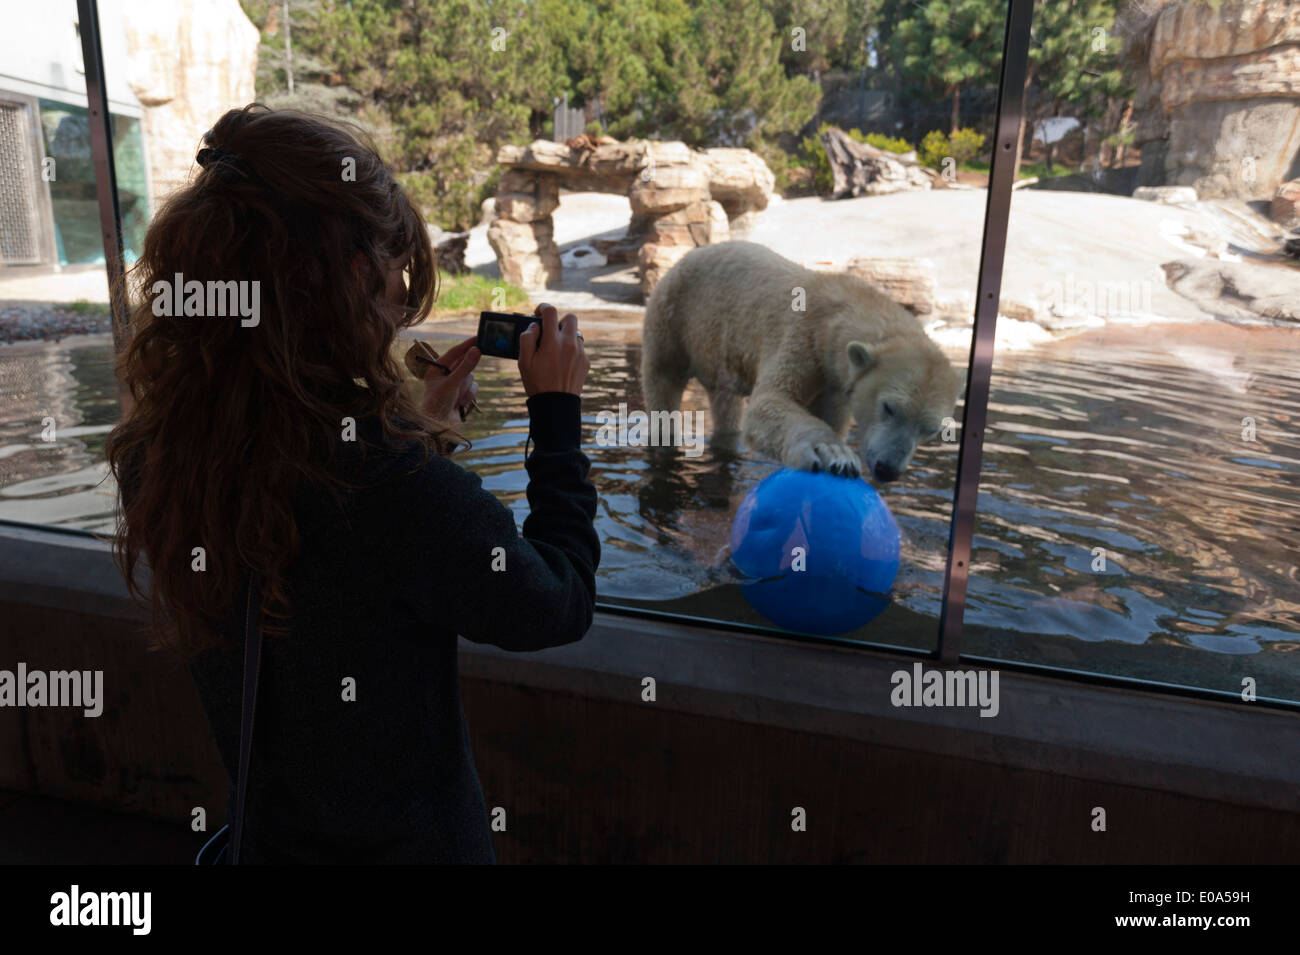 San Diego Zoo, Balboa Park, San Diego, California, USA. Stock Photo